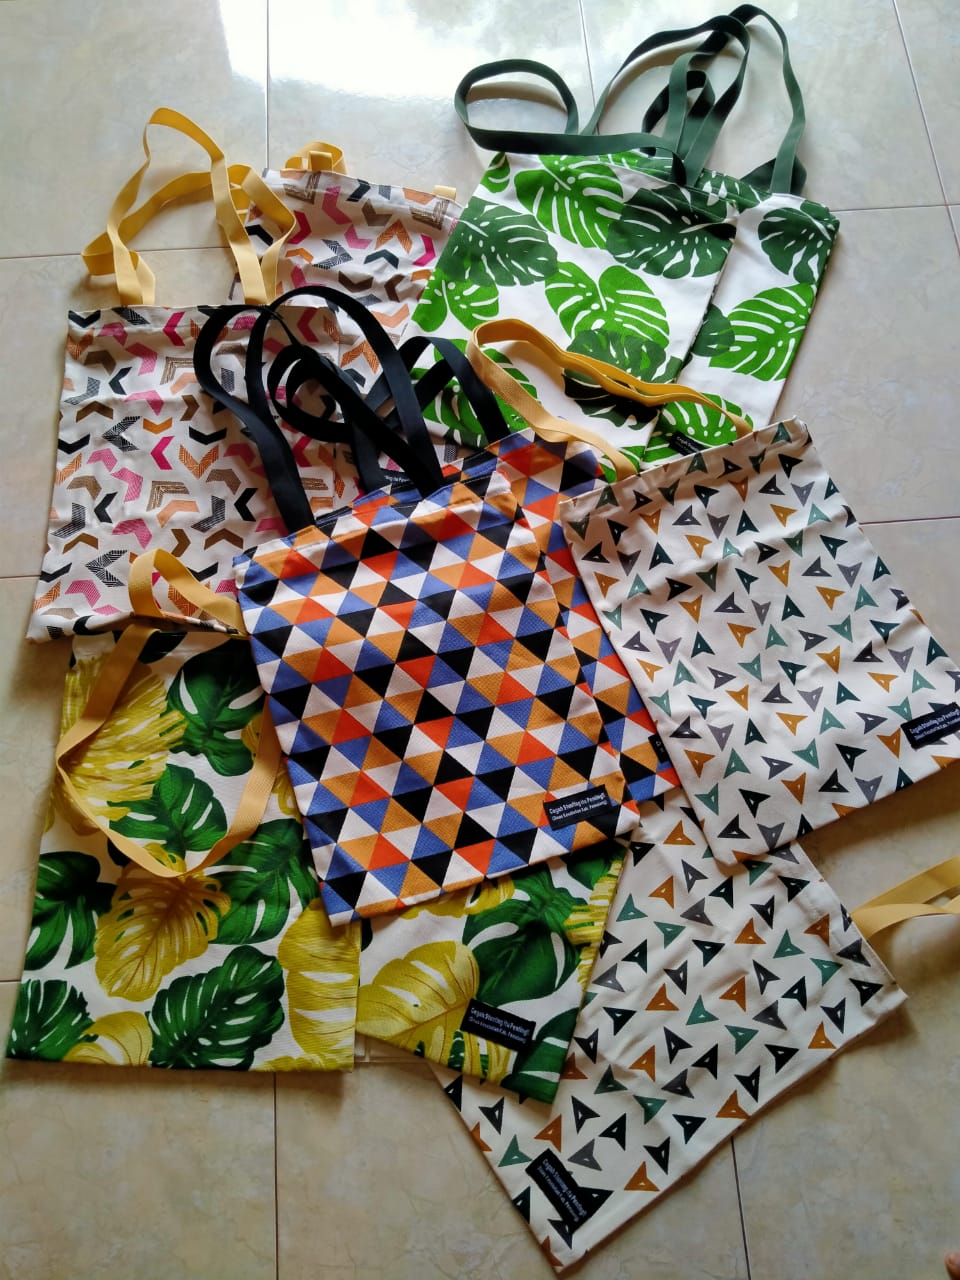 melayani pembuatan tas tote bag custom bisa custom dengan desain sesuai permintaan dan budget dari Turi Sleman Yogyakarta